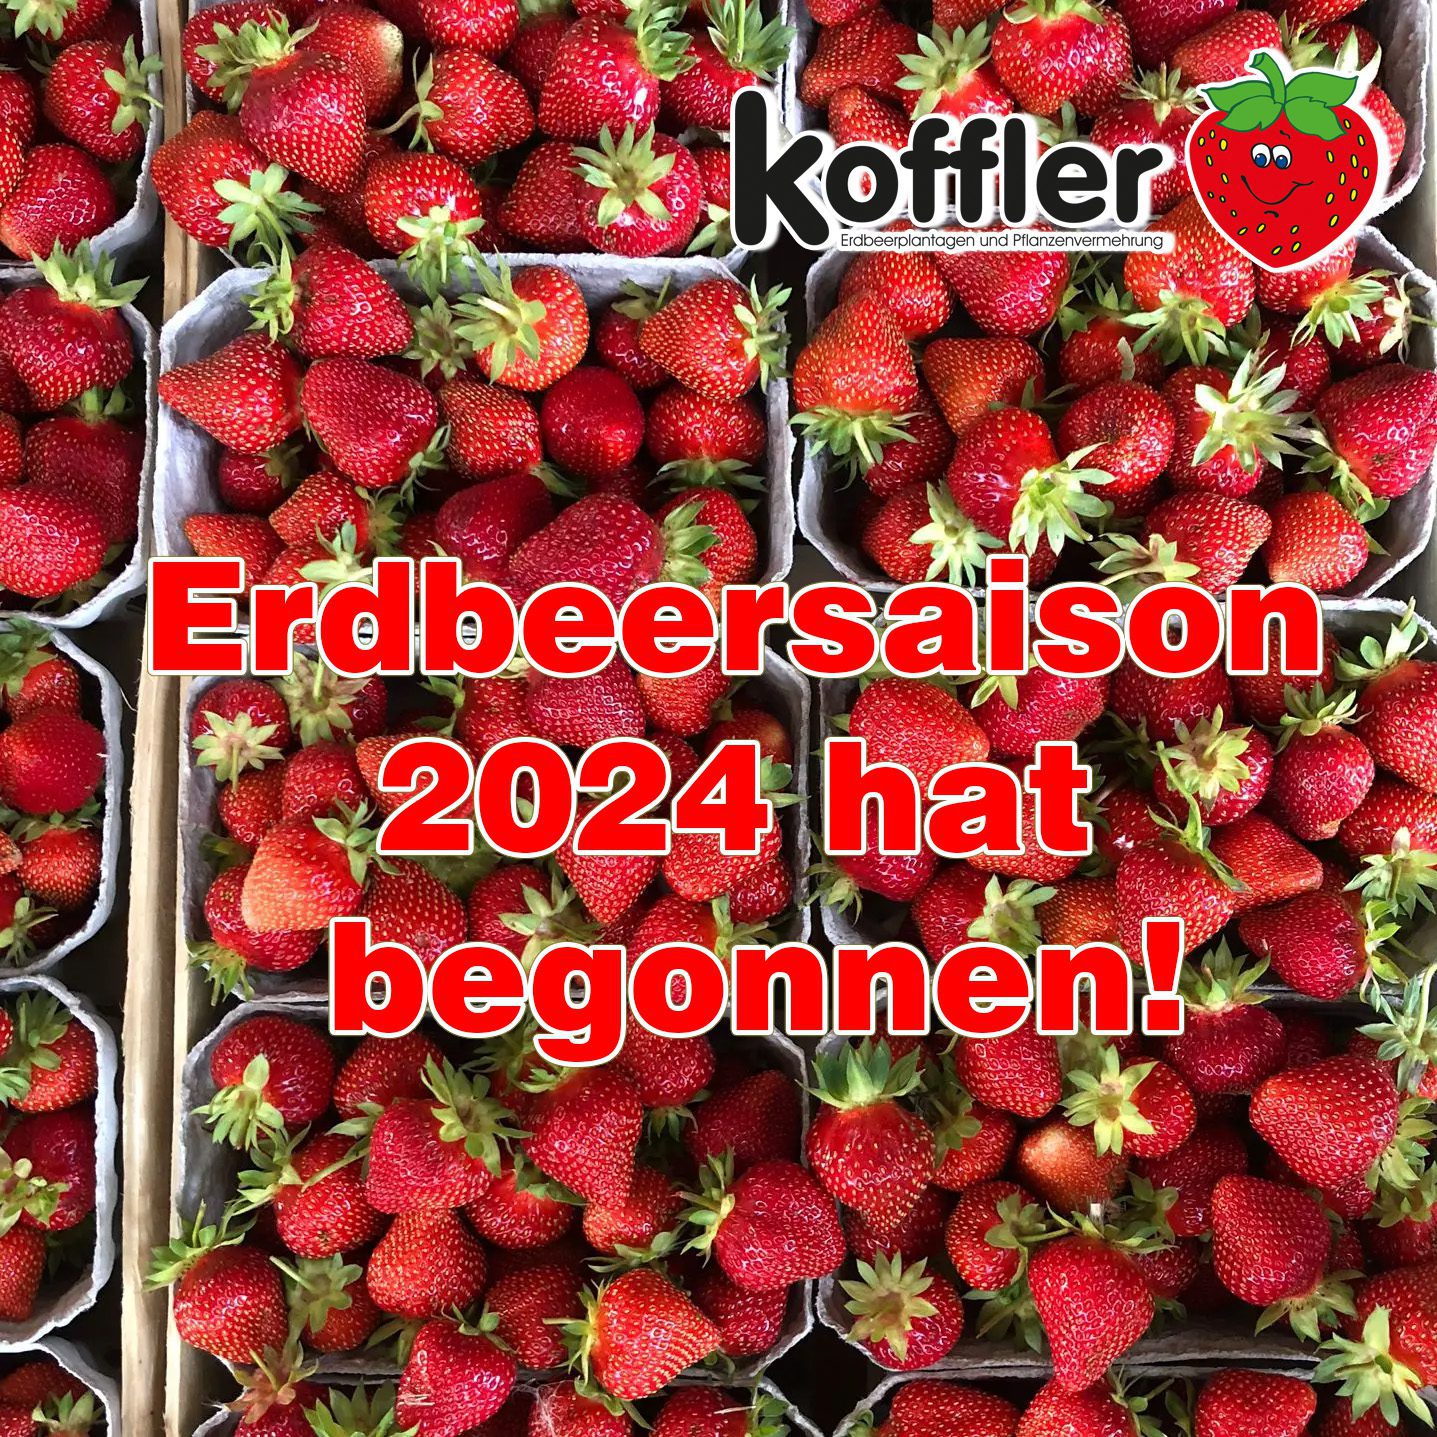 Willkommen zur Erdbeersaison 2024 bei Koffler Erdbeeren!